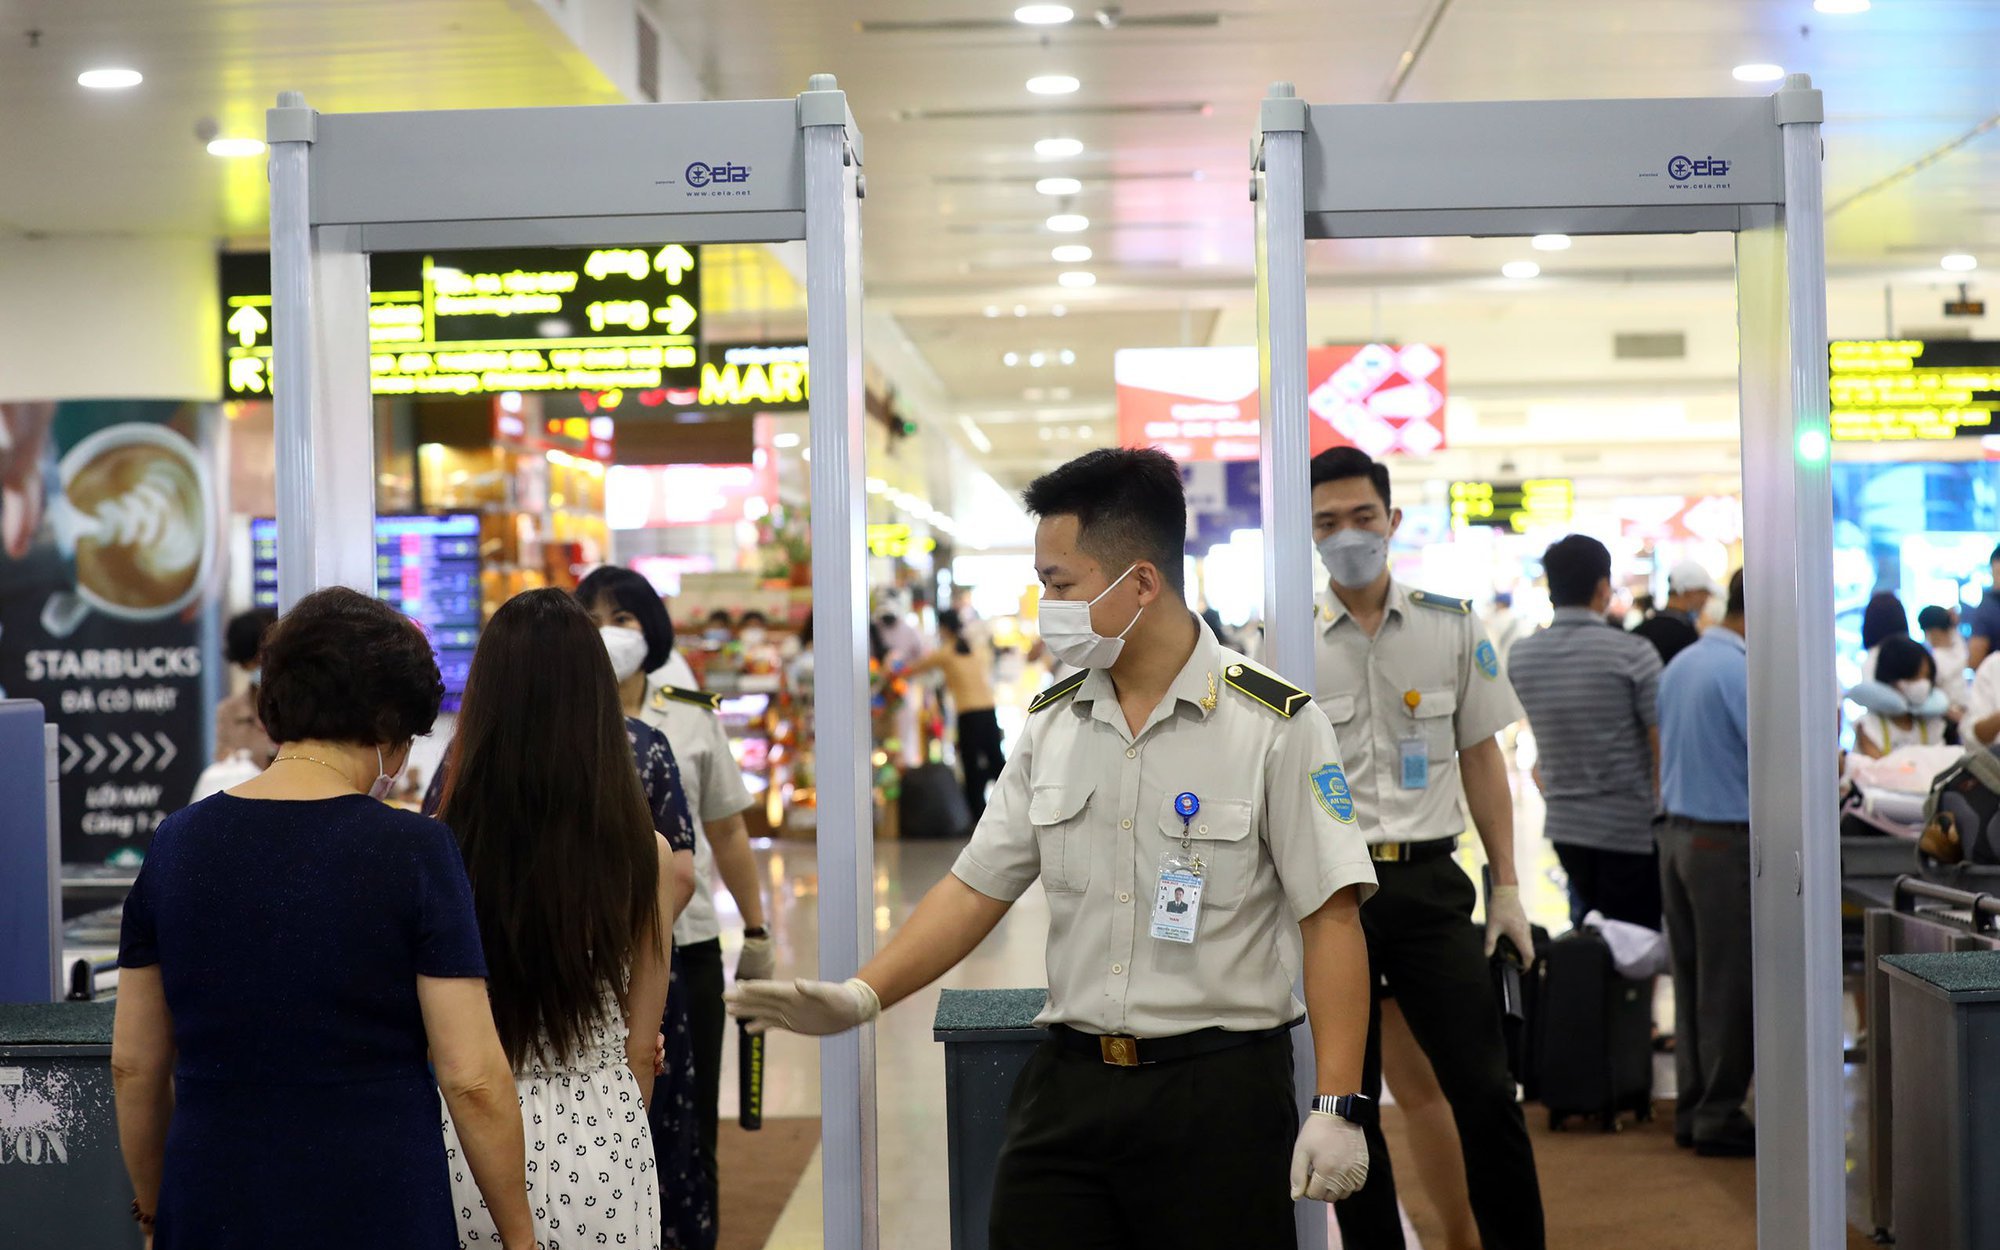 Nghỉ Tết Nguyên đán Quý Mão 2023, sân bay Nội Bài khuyến cáo những gì?